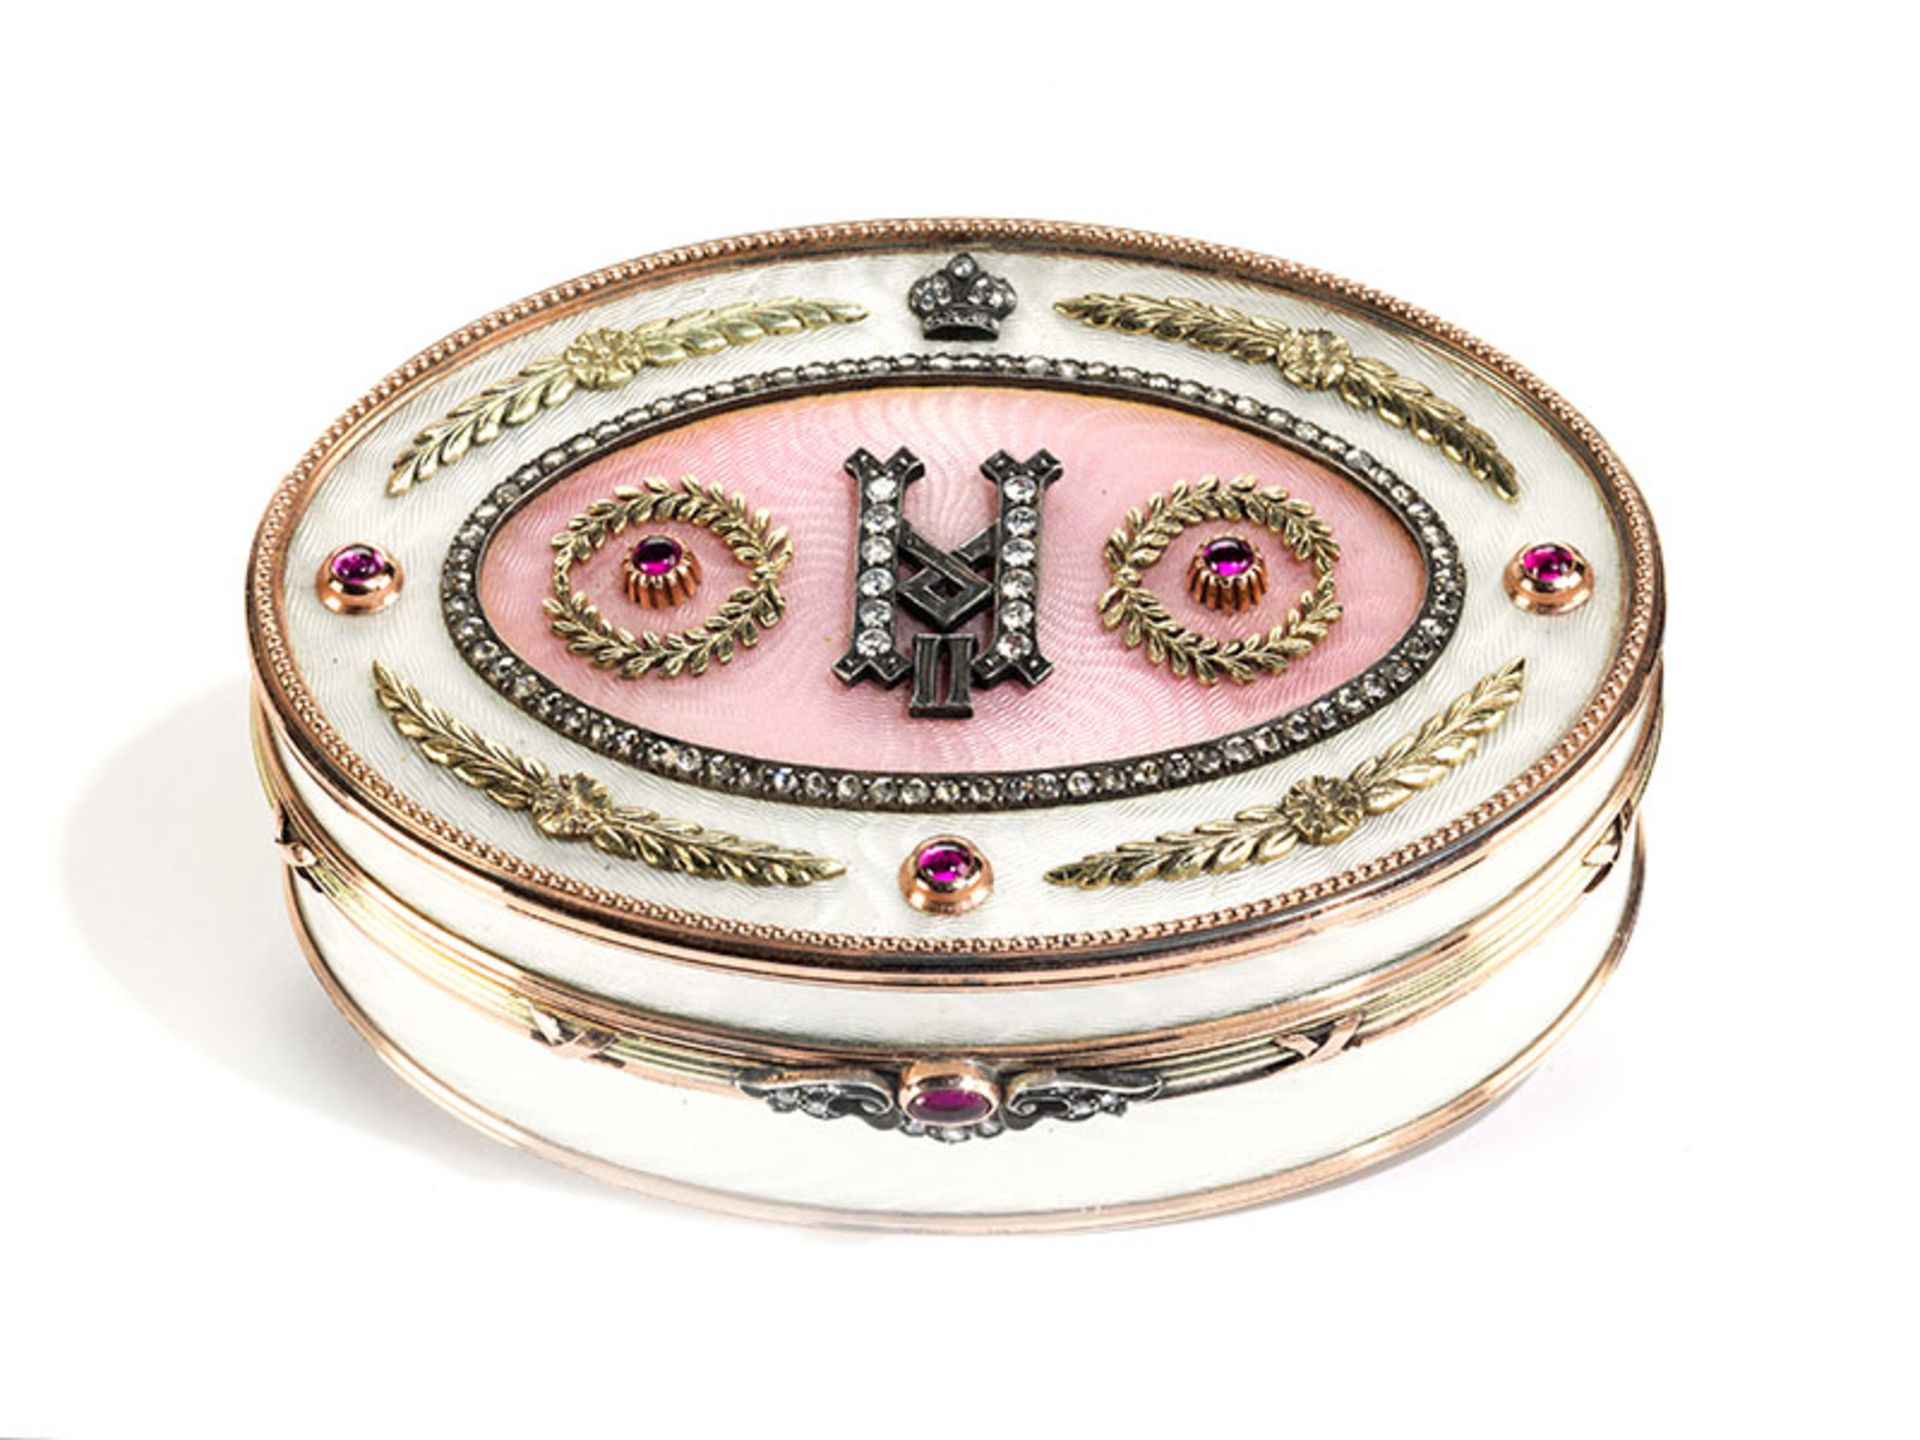 Golddose im Fabergé-Stil 2,7 x 8,3 x 6 cm. 190 g. Boden und Deckel punziert mit 56 Zolotnik und